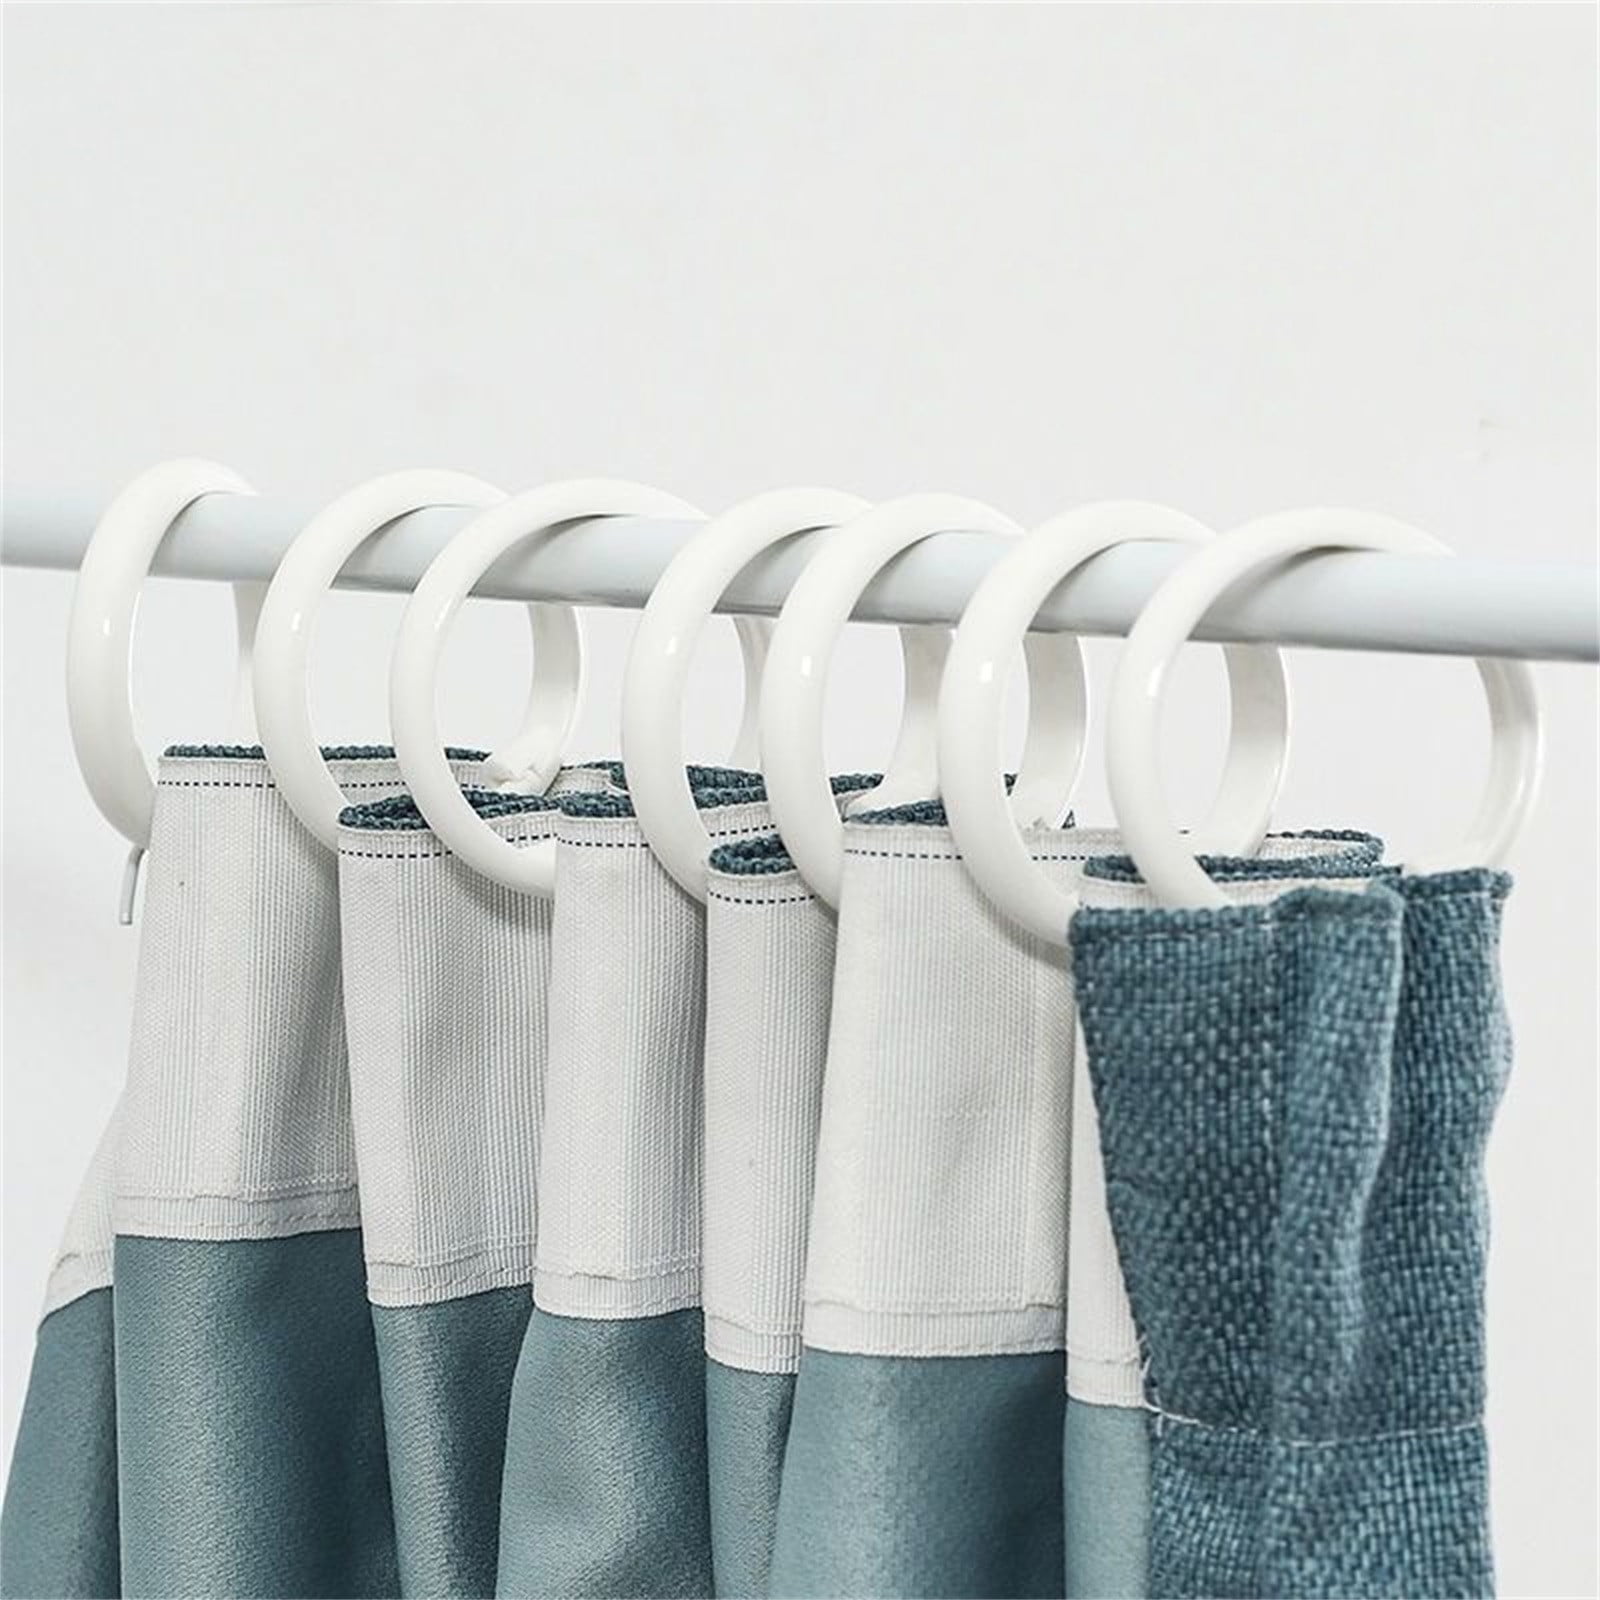 24pcs White Plastic Shower Curtain Hooks Rings C Rings Hanger Bath Drape  Loop Clip Glide (White) 